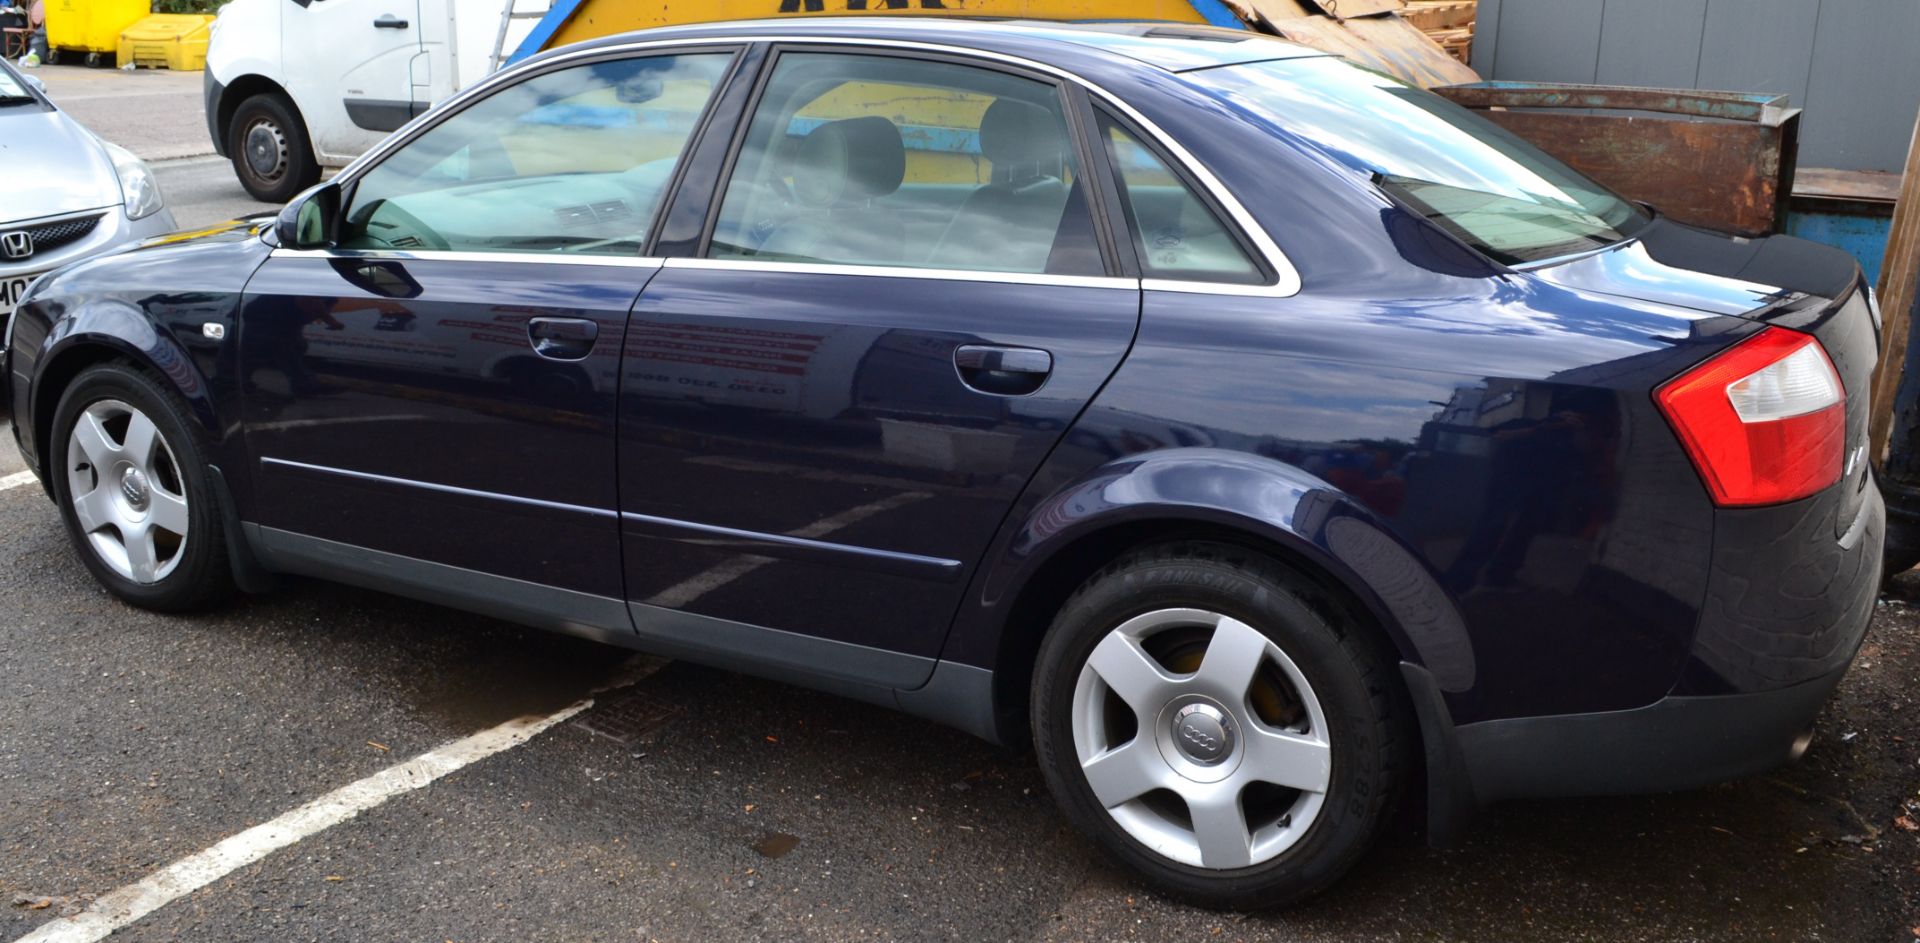 Audi A4 SE Auto Blue 2.4L - CL011 - Location: Altrincham WA14 - Image 8 of 13